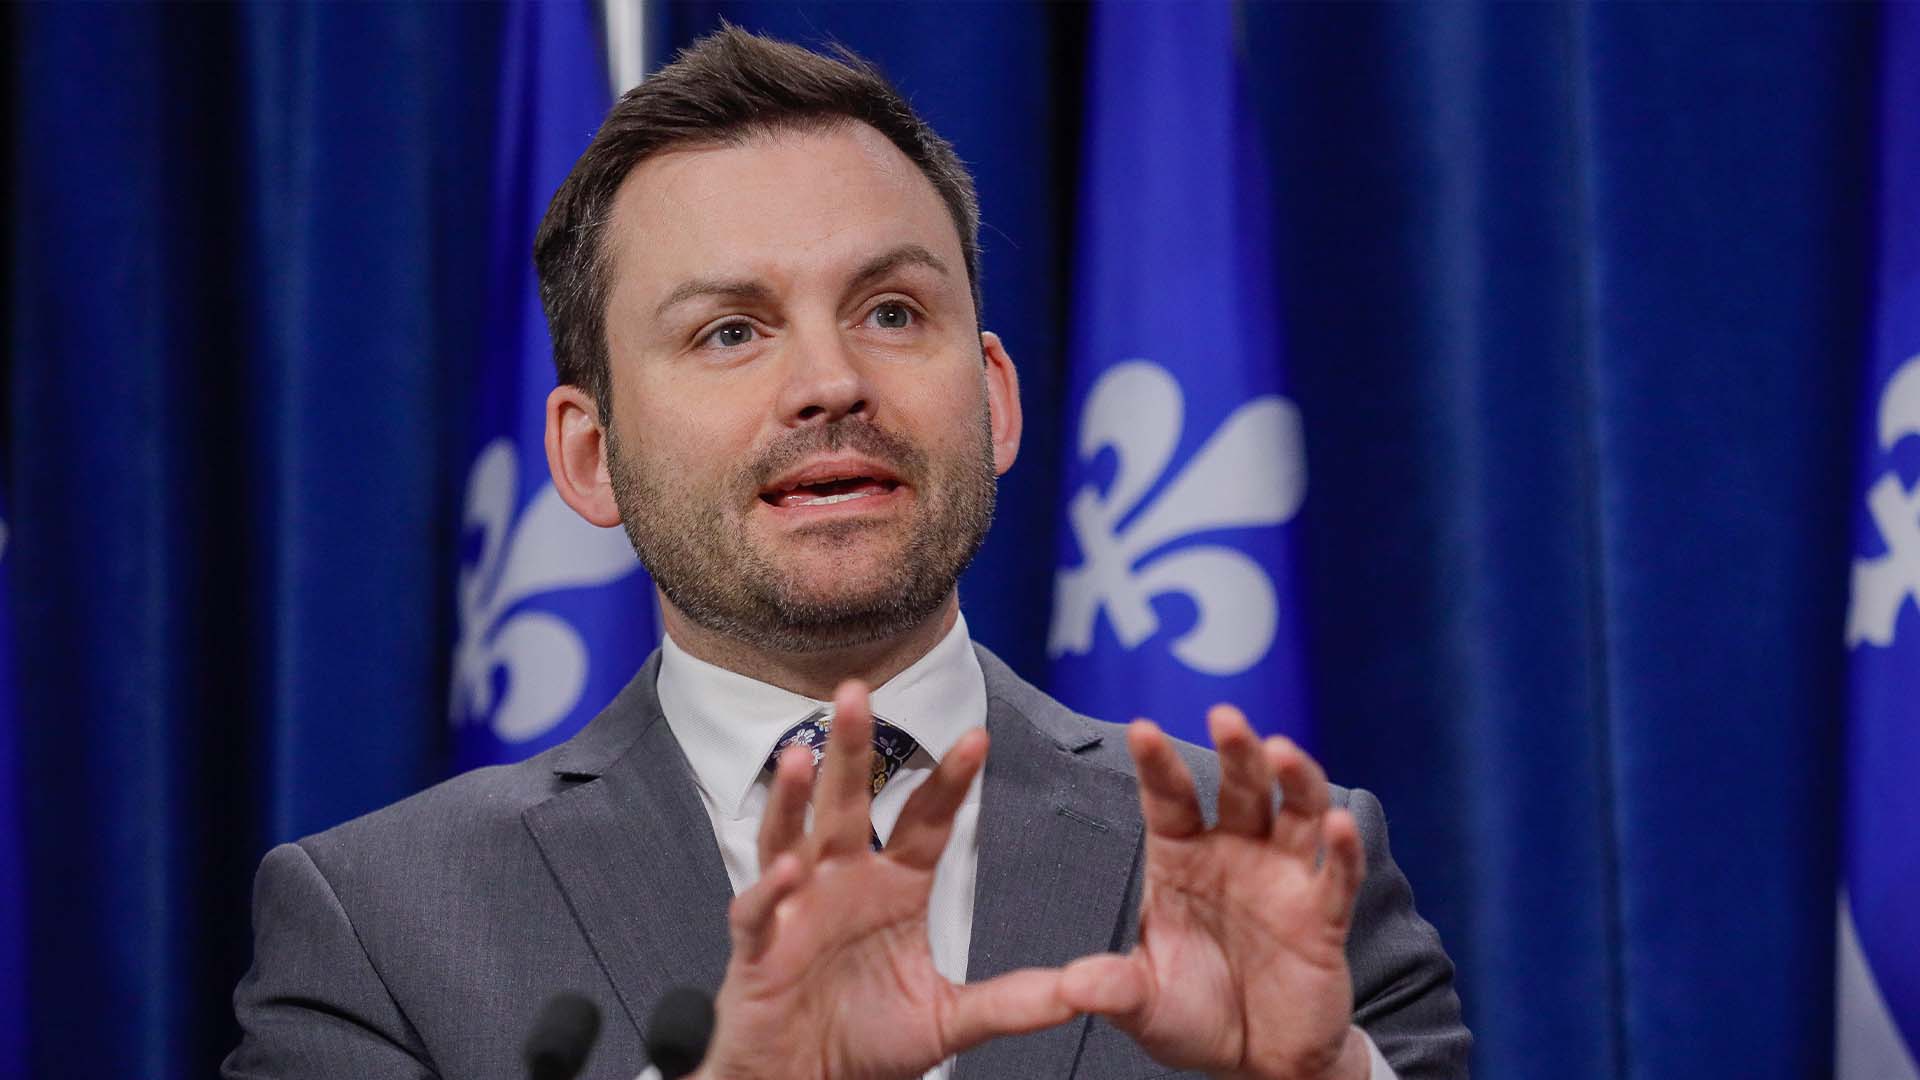 Le chef du Parti québécois (PQ), Paul St-Pierre Plamondon, visitera quelques pays en Europe à compter de jeudi afin de «renforcer les liens avec nos principaux partenaires internationaux et d’expliquer où en est la question de l’indépendance du Québec en 2023».